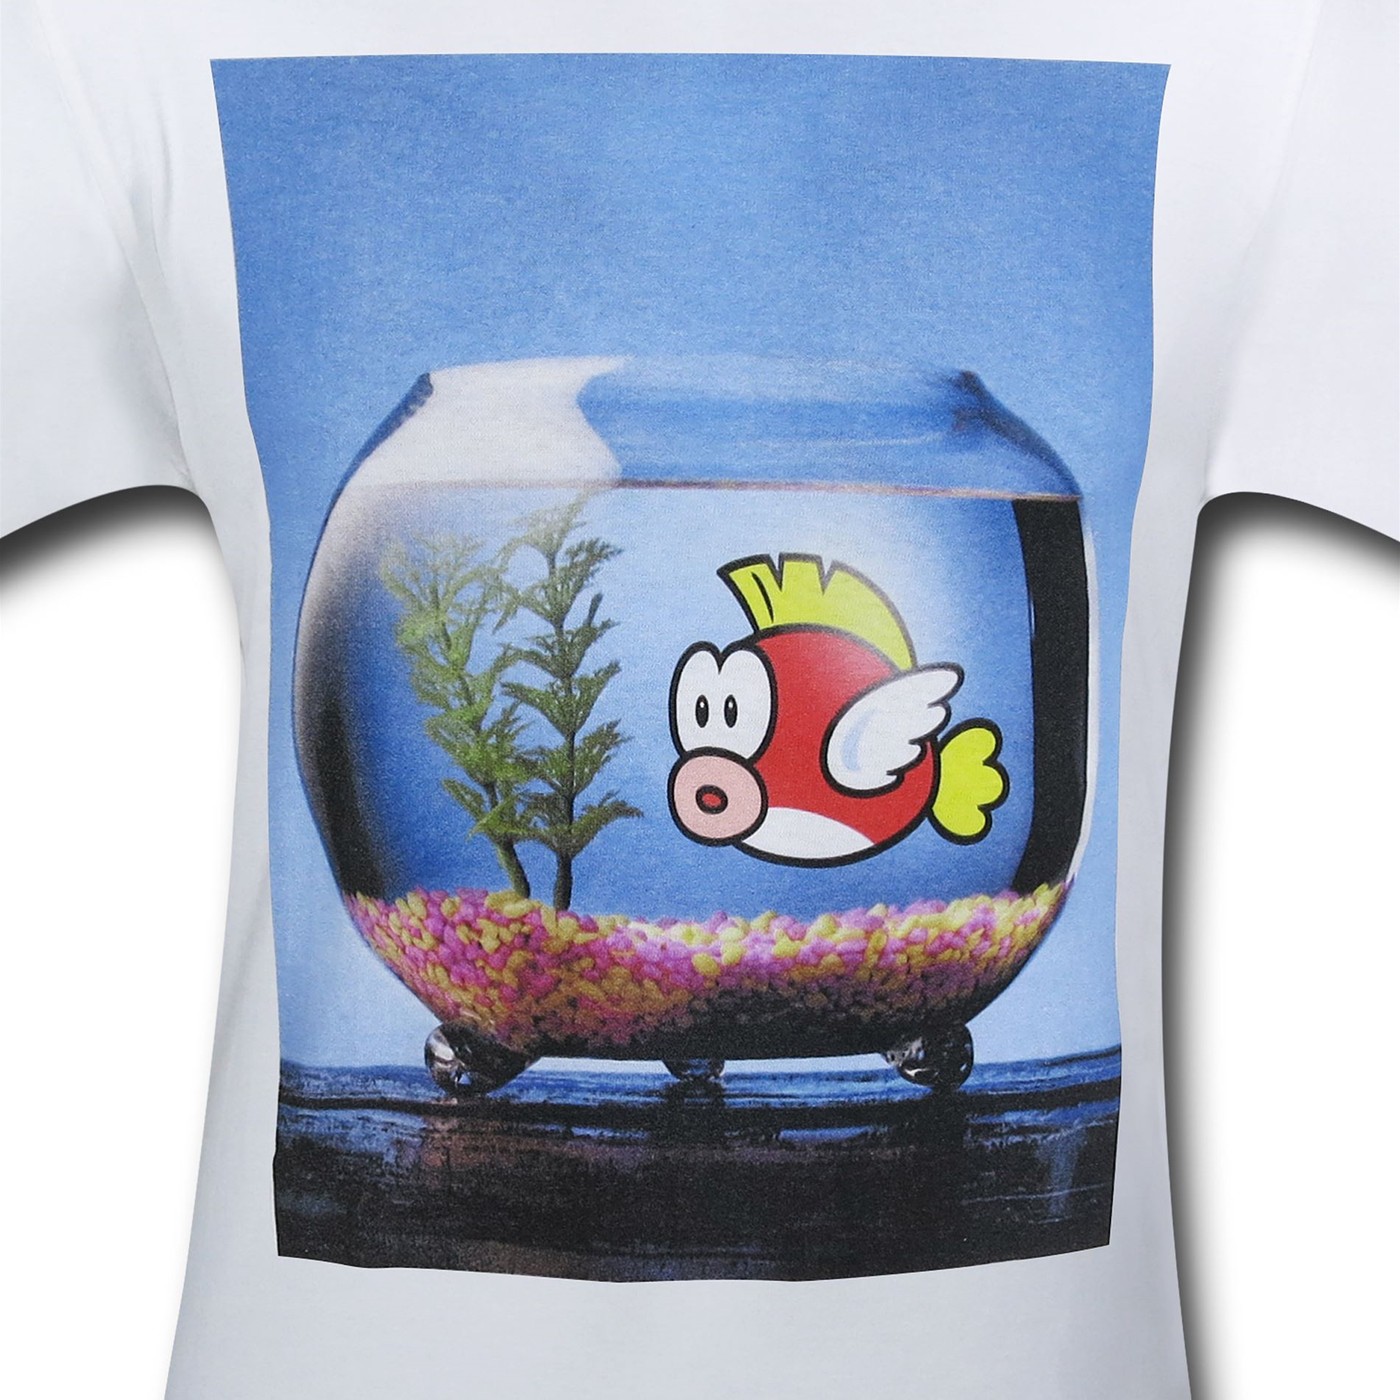 Nintendo Mario Cheep Cheep Fish Bowl T-Shirt